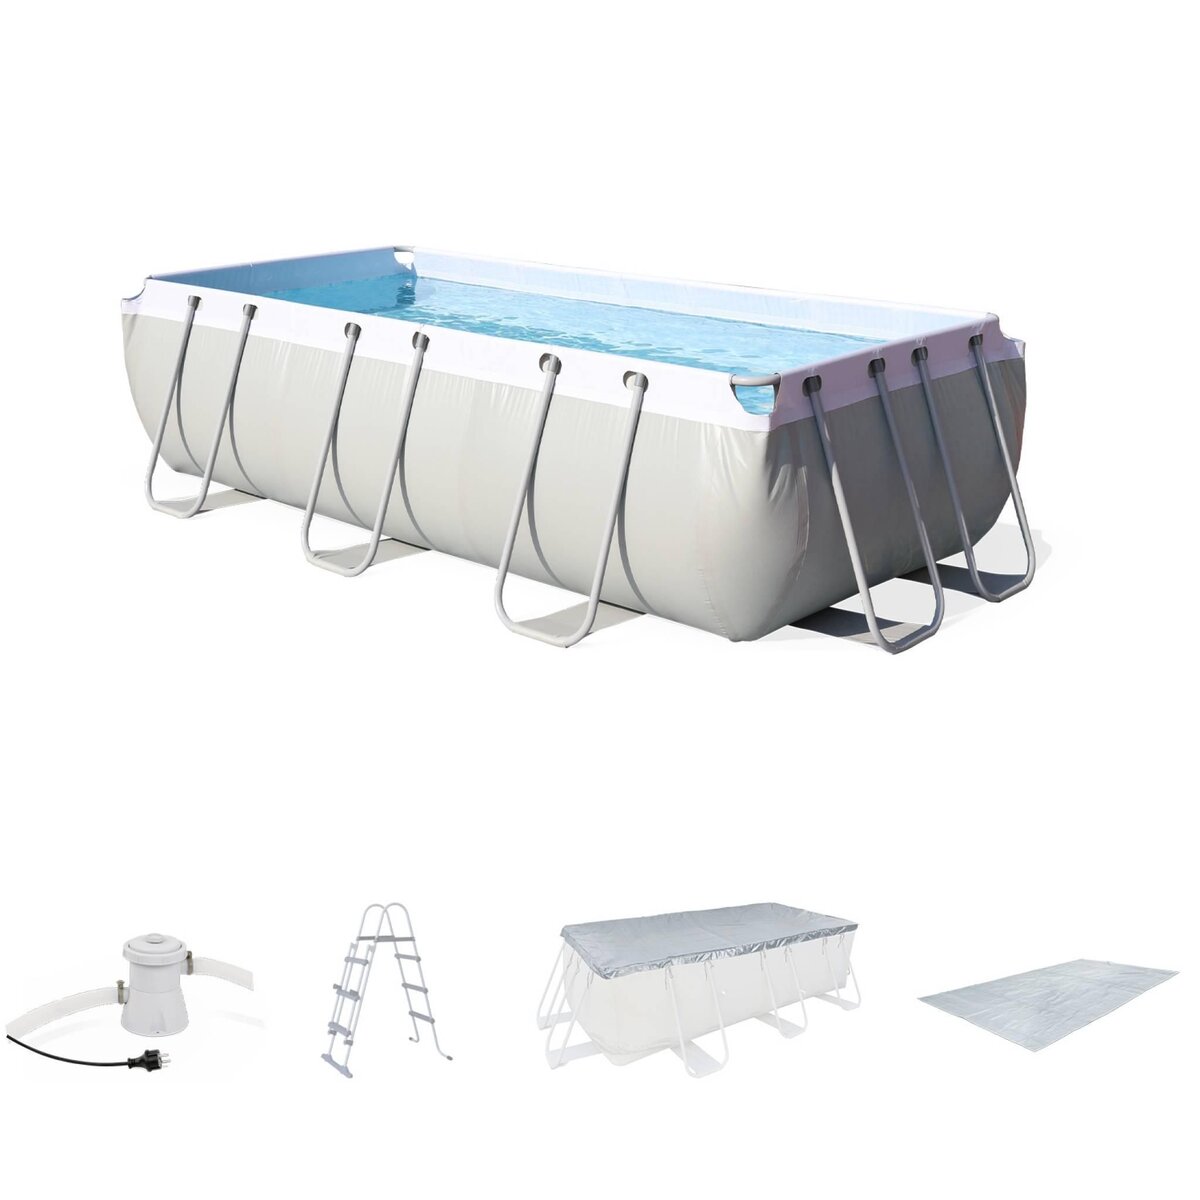 BESTWAY Kit grande piscine tubulaire - Topaze grise - piscine rectangulaire 4x2m avec pompe de filtration. bâche de protection. tapis de sol et échelle. piscine hors sol armature acier